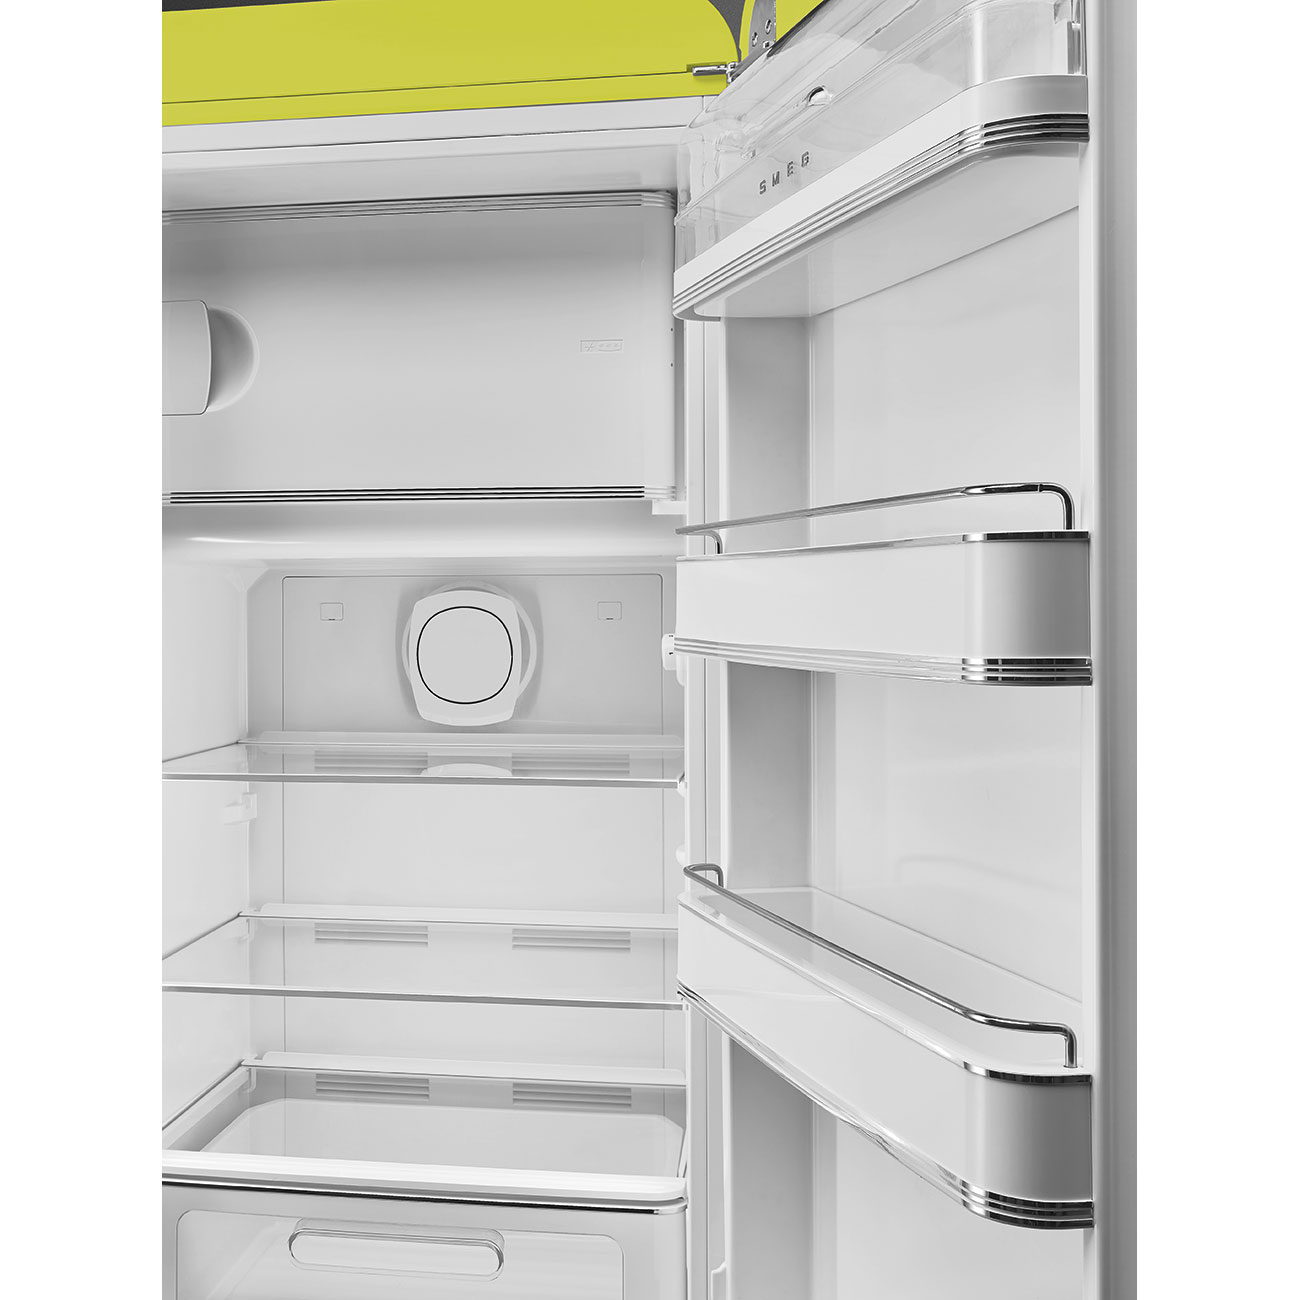 Lime green refrigerator - Smeg_4